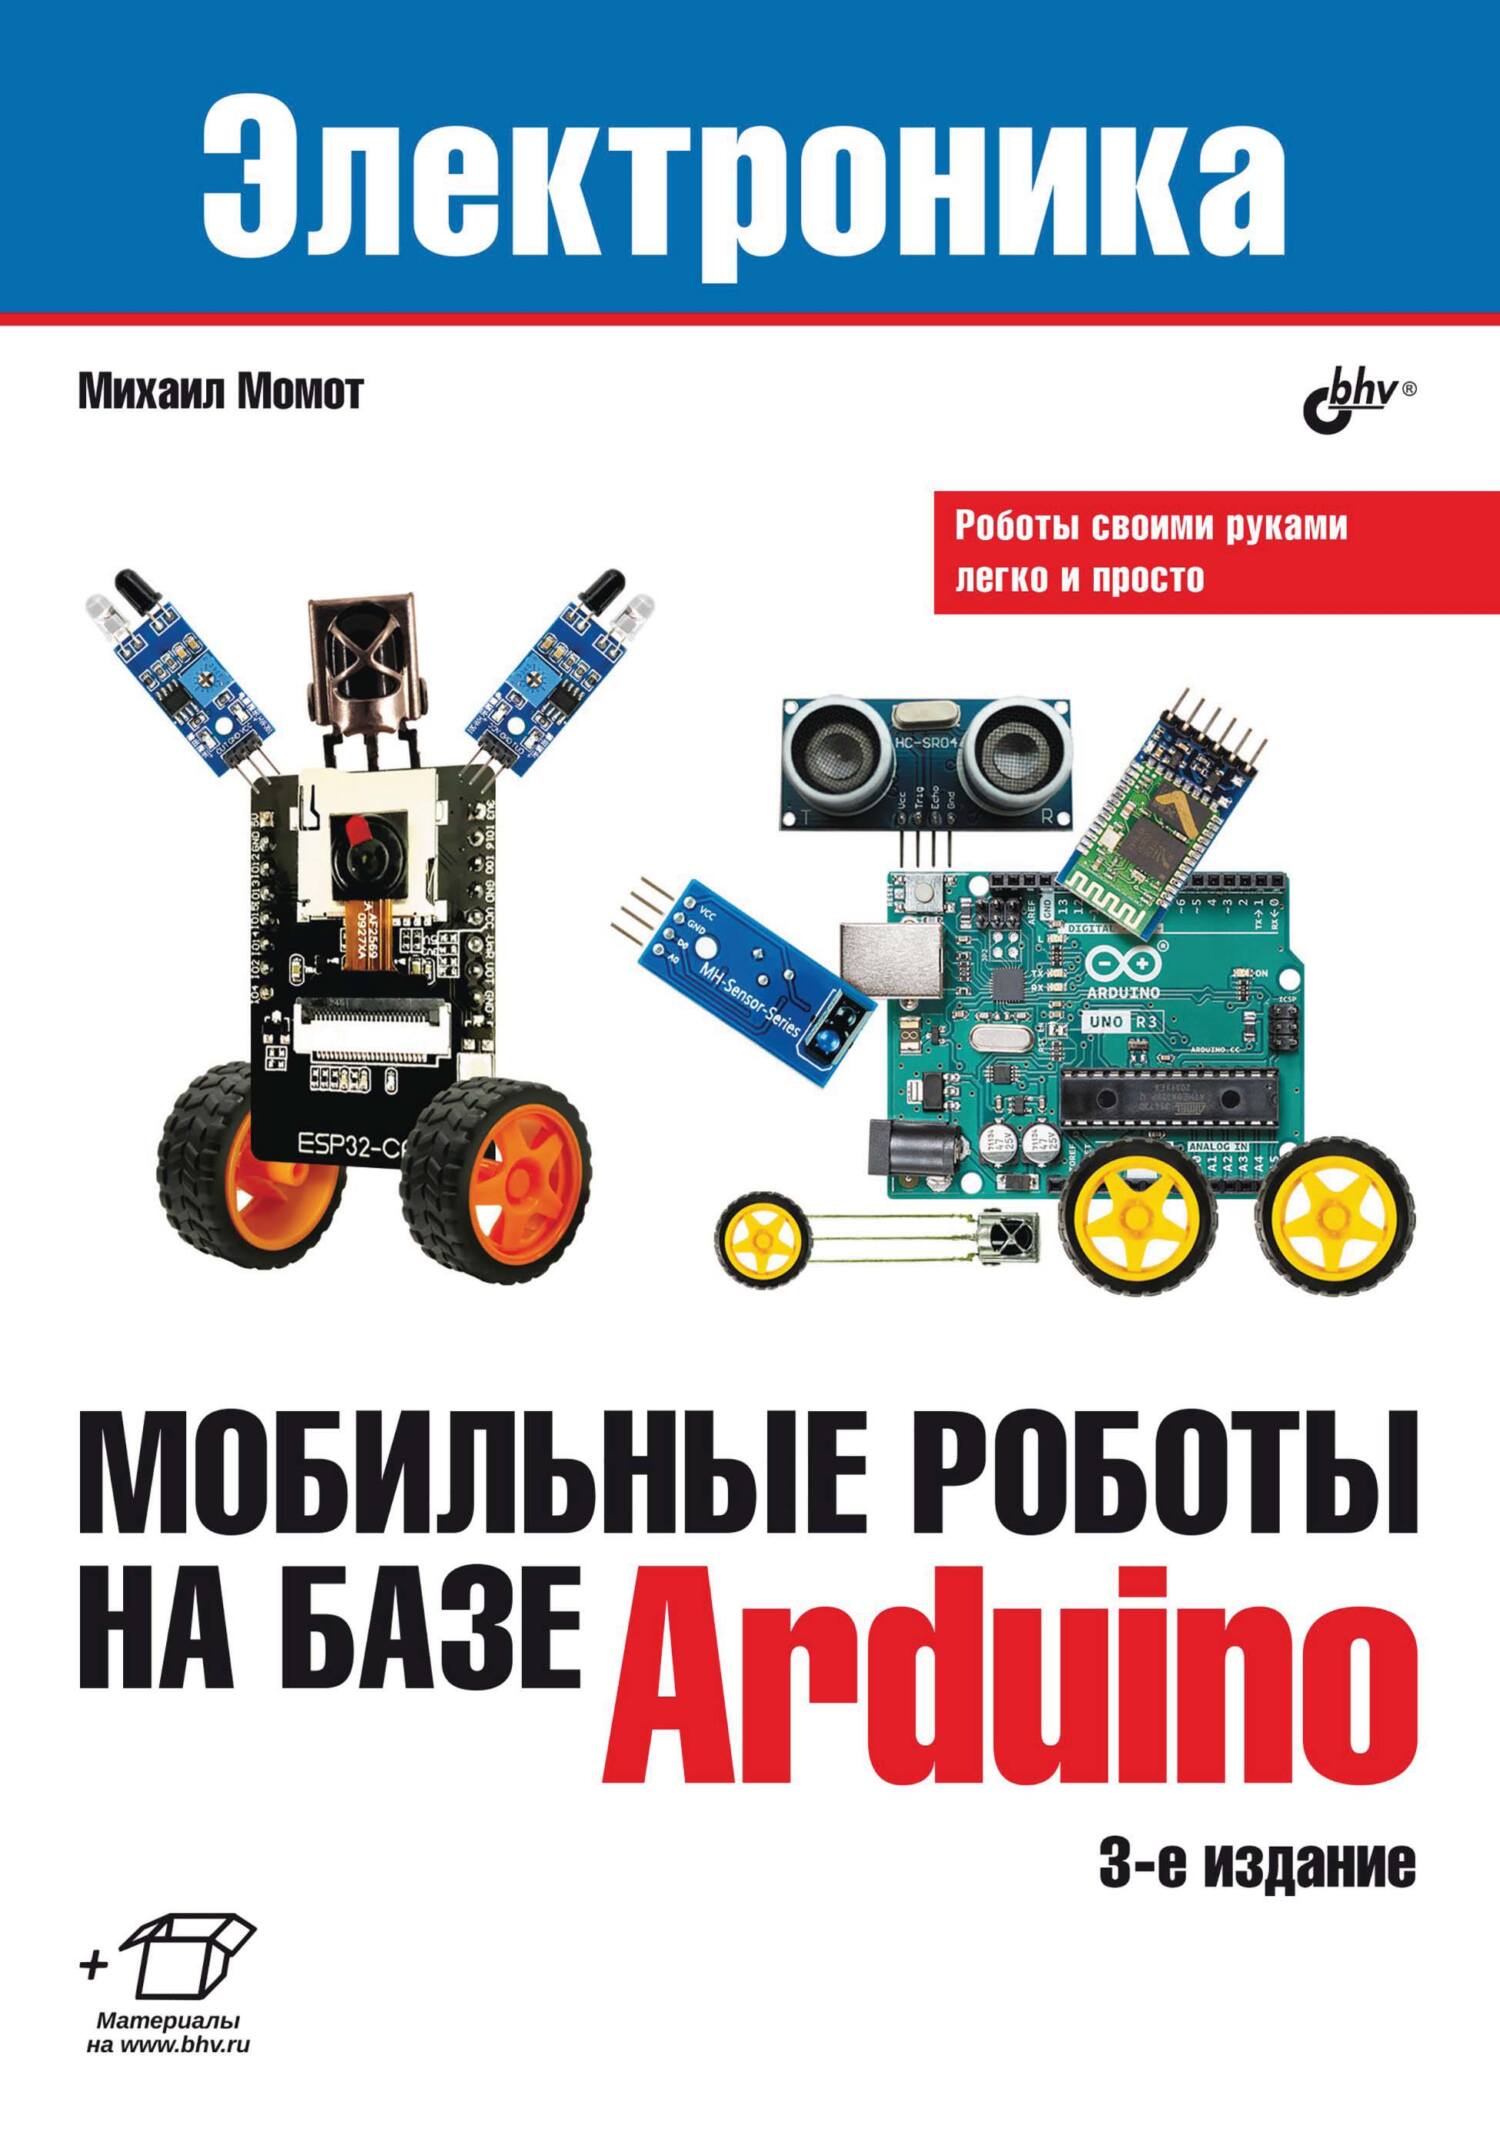 Книга Электроника (BHV) Мобильные роботы на базе Arduino созданная Михаил Момот может относится к жанру информатика и вычислительная техника, кибернетика, программирование, руководства, электроника. Стоимость электронной книги Мобильные роботы на базе Arduino с идентификатором 23878269 составляет 280.00 руб.